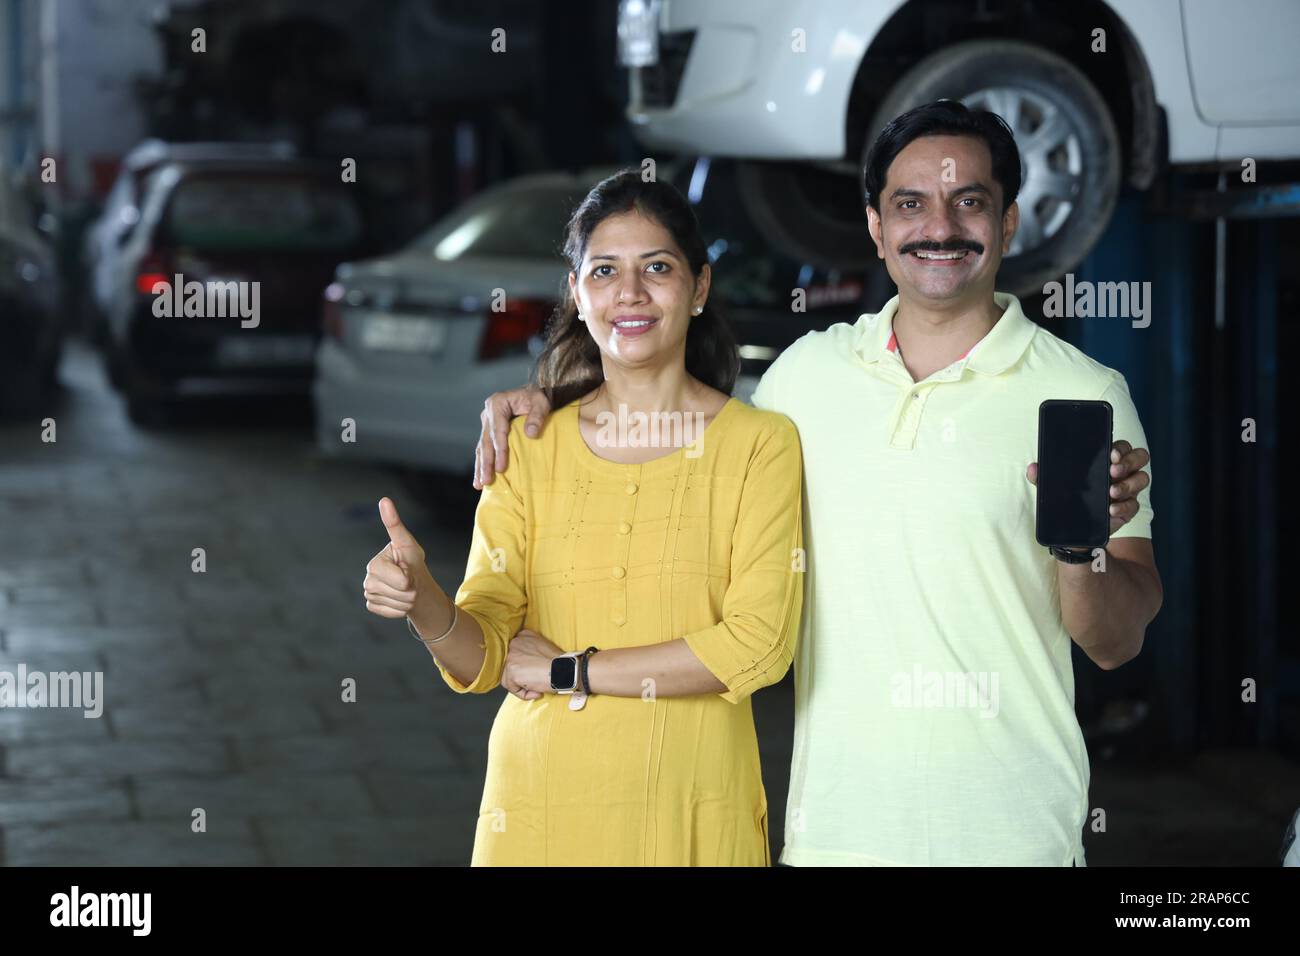 Les clients heureux indiens montrant les pouces vers le haut pour réparer la voiture avec honnêteté. Montrer la confiance et la satisfaction du client envers la station-service Banque D'Images